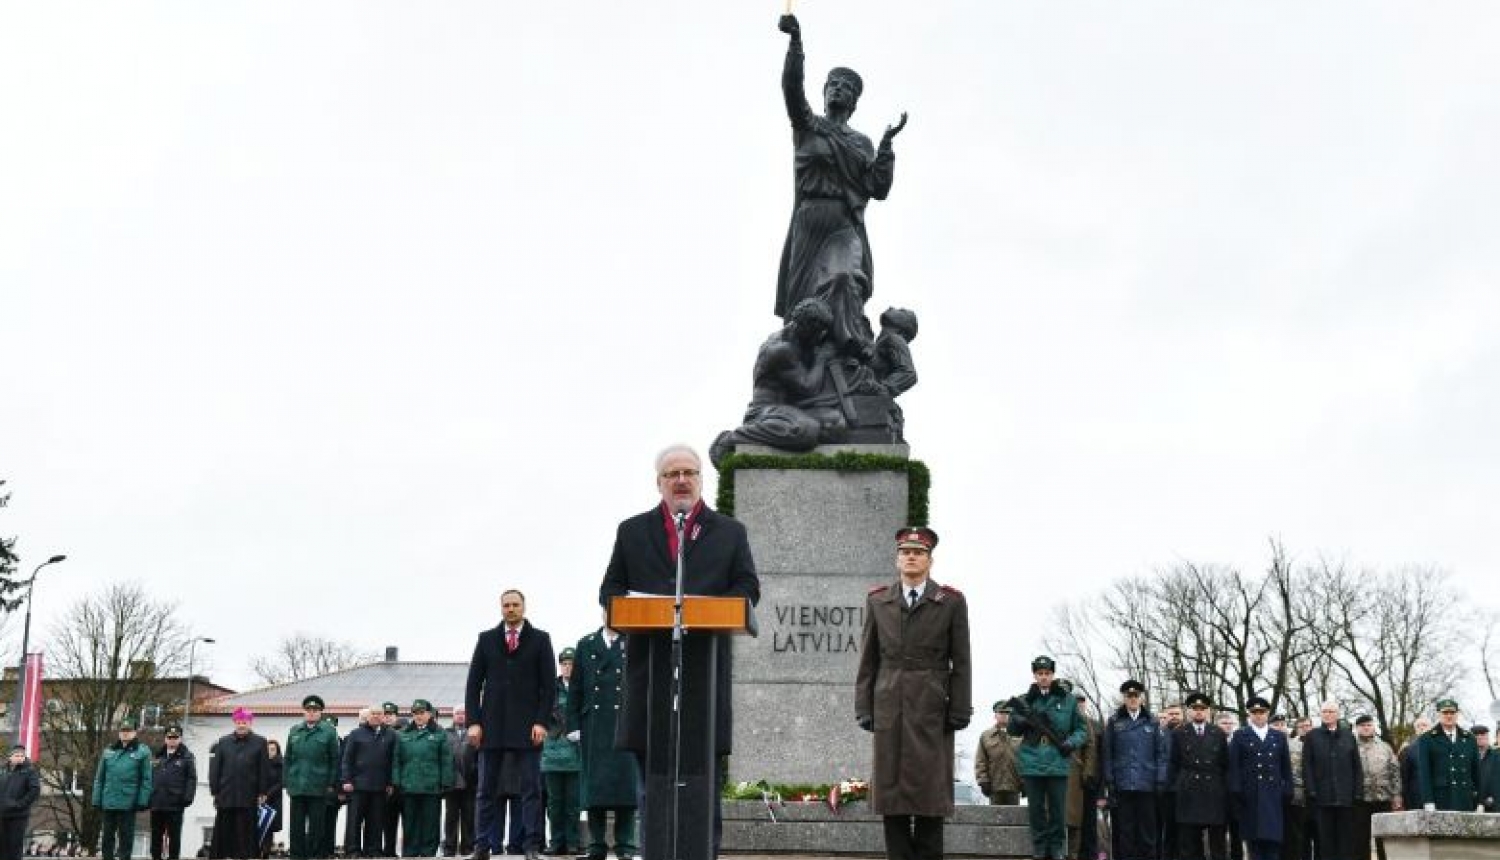 Valsts prezidenta Egila Levita uzruna Valsts robežsardzes simtgades parādē Rēzeknē, pie Latgales atbrīvošanas pieminekļa “Vienoti Latvijai”